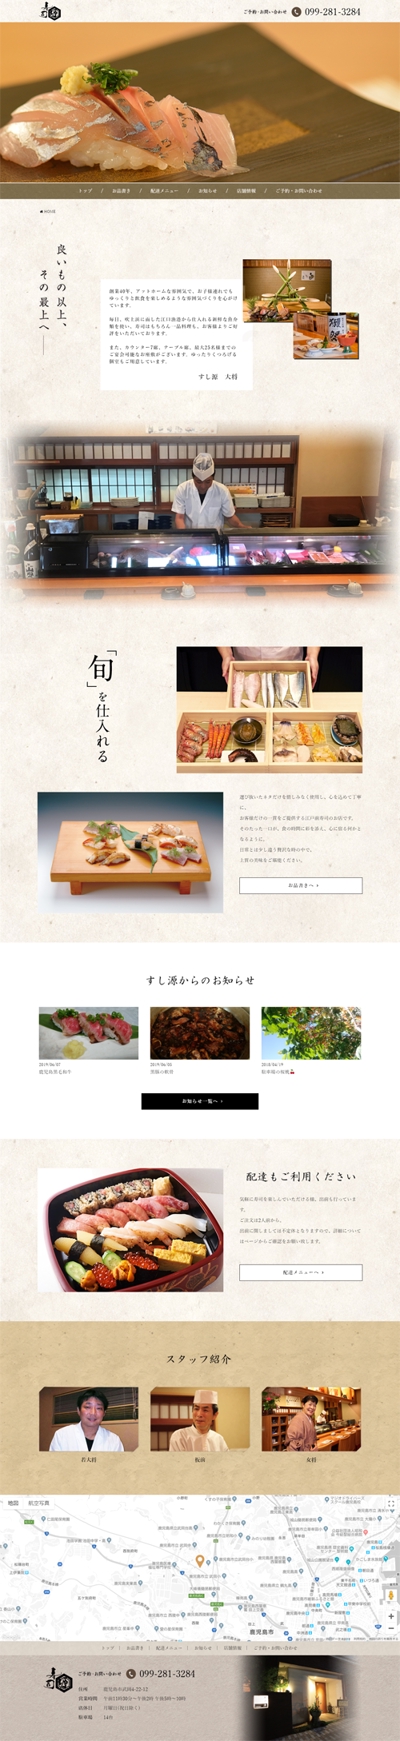 寿司店ホームページ制作